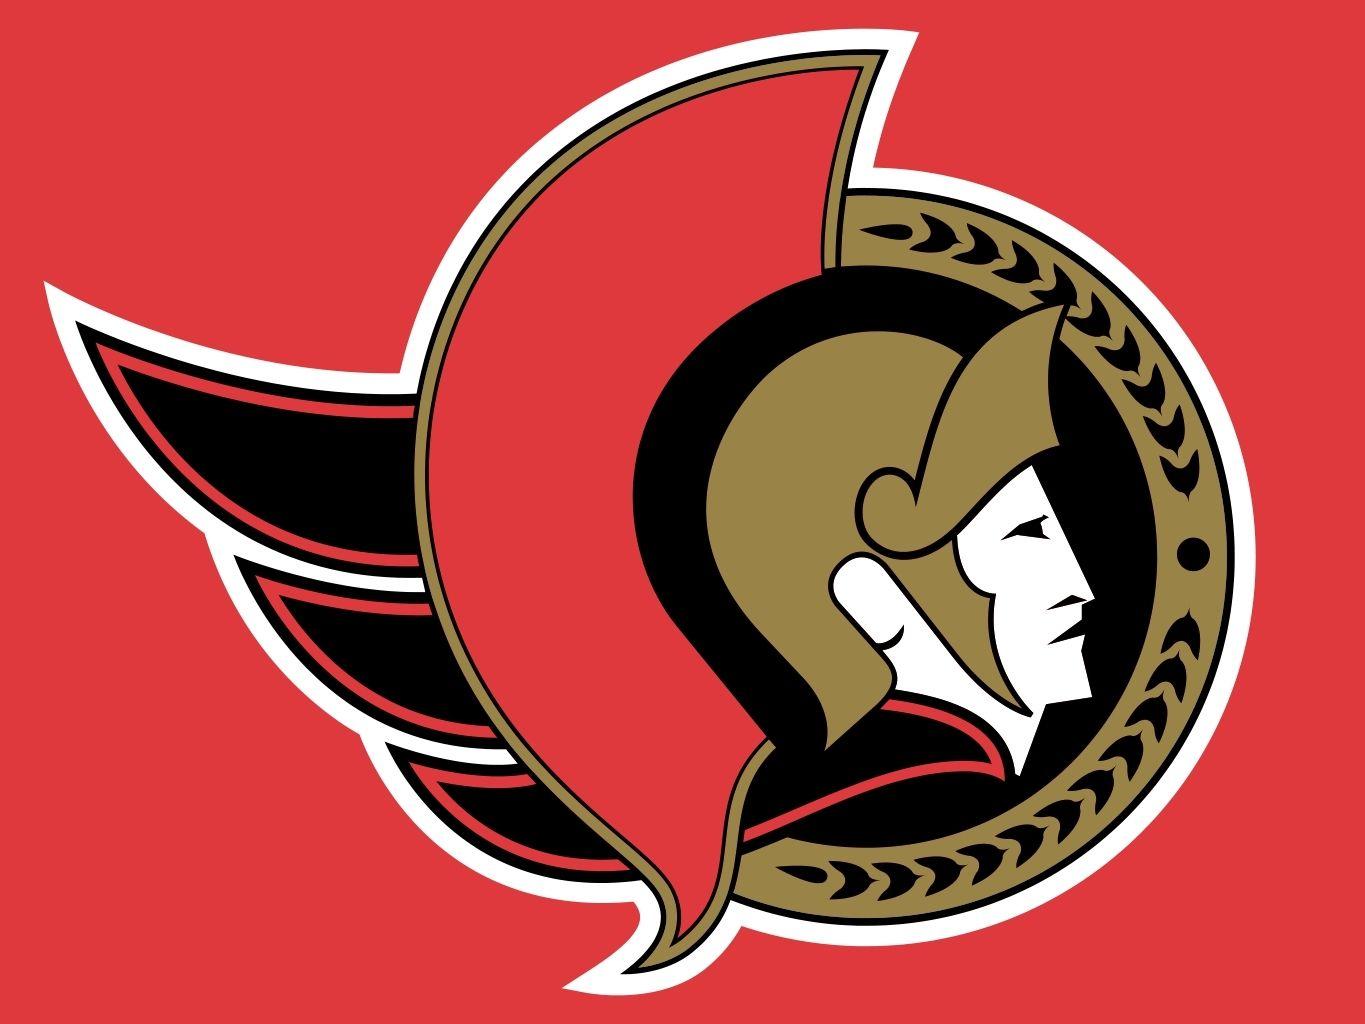 Senators Logo - Old Ottawa Senators Logo